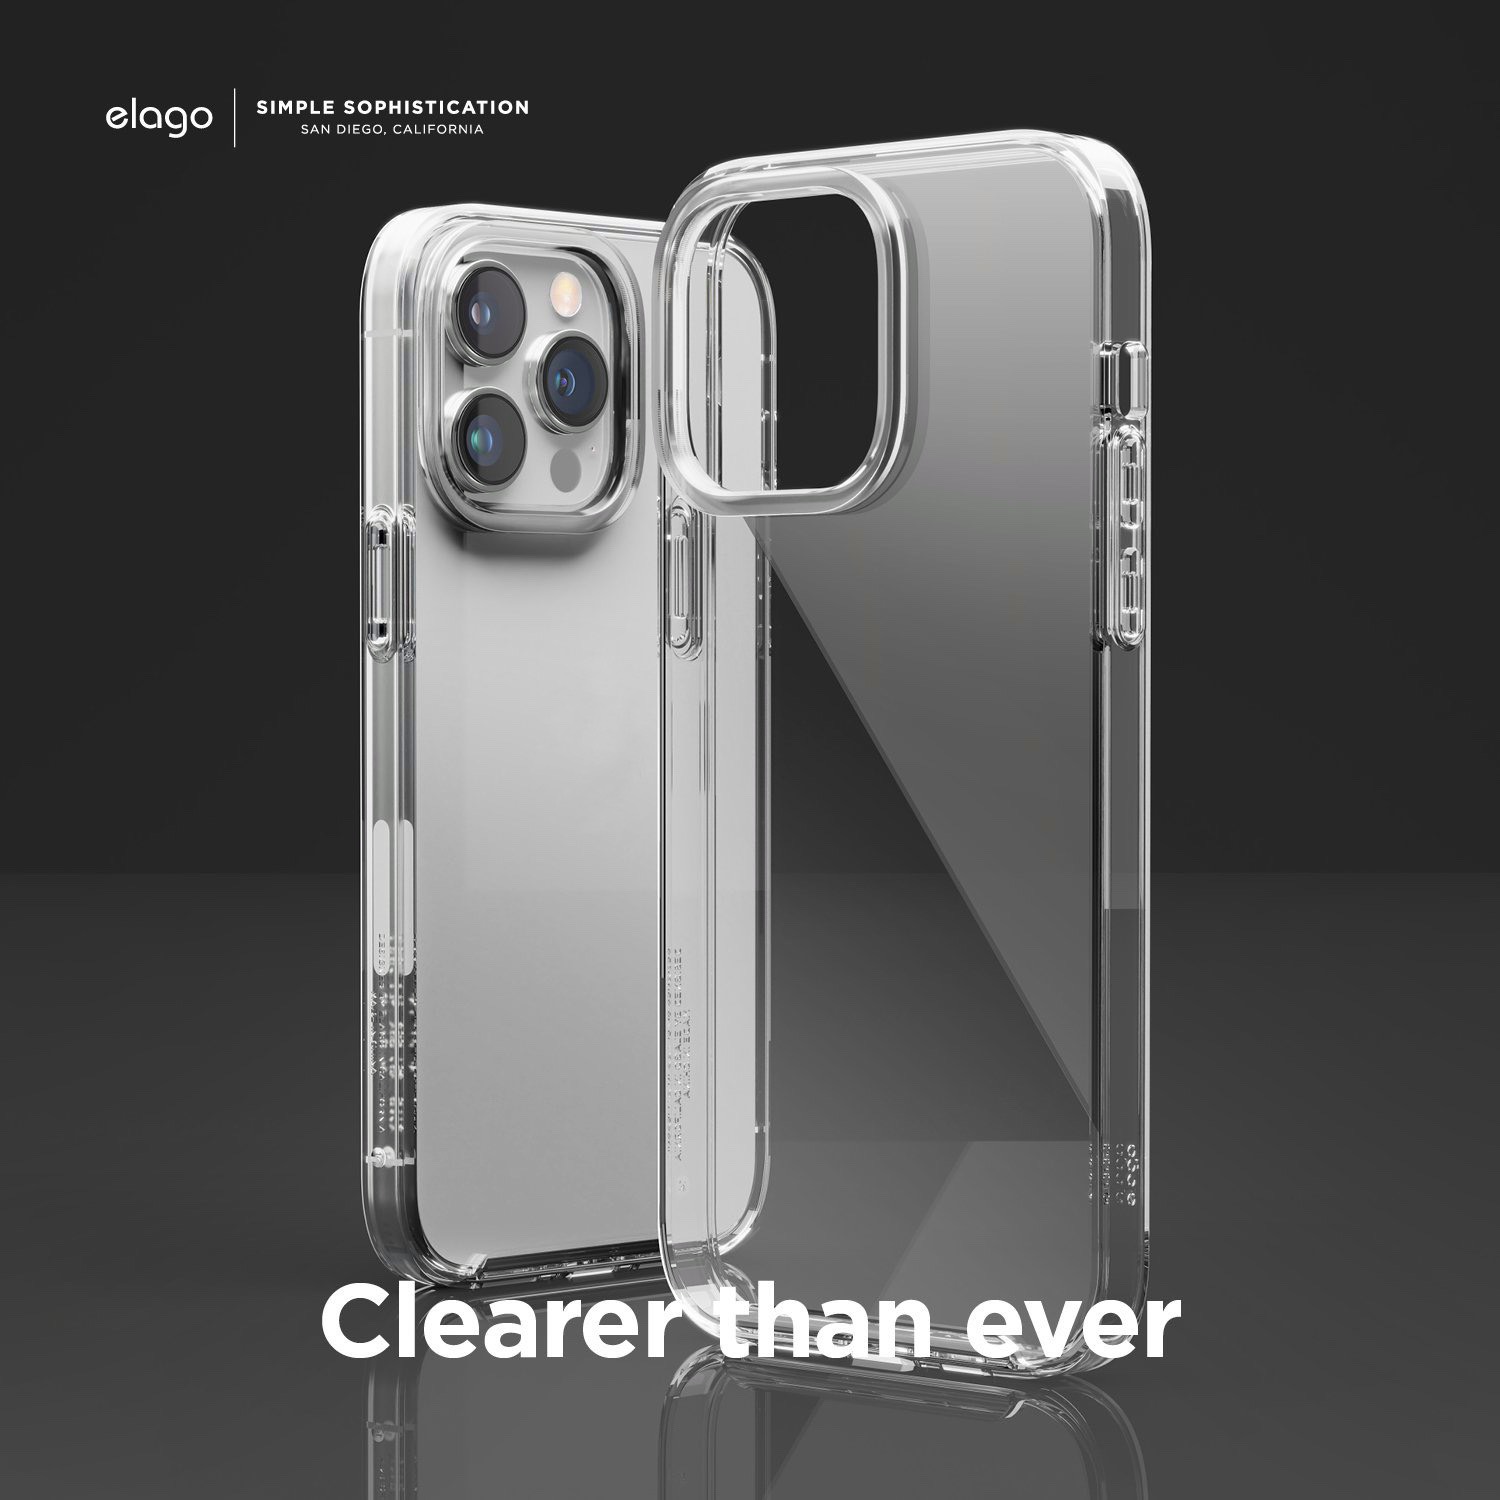 Ốp lưng dành cho iPhone 14 Pro/ 14 Pro Max Elago Hybrid Case - Hàng Chính Hãng